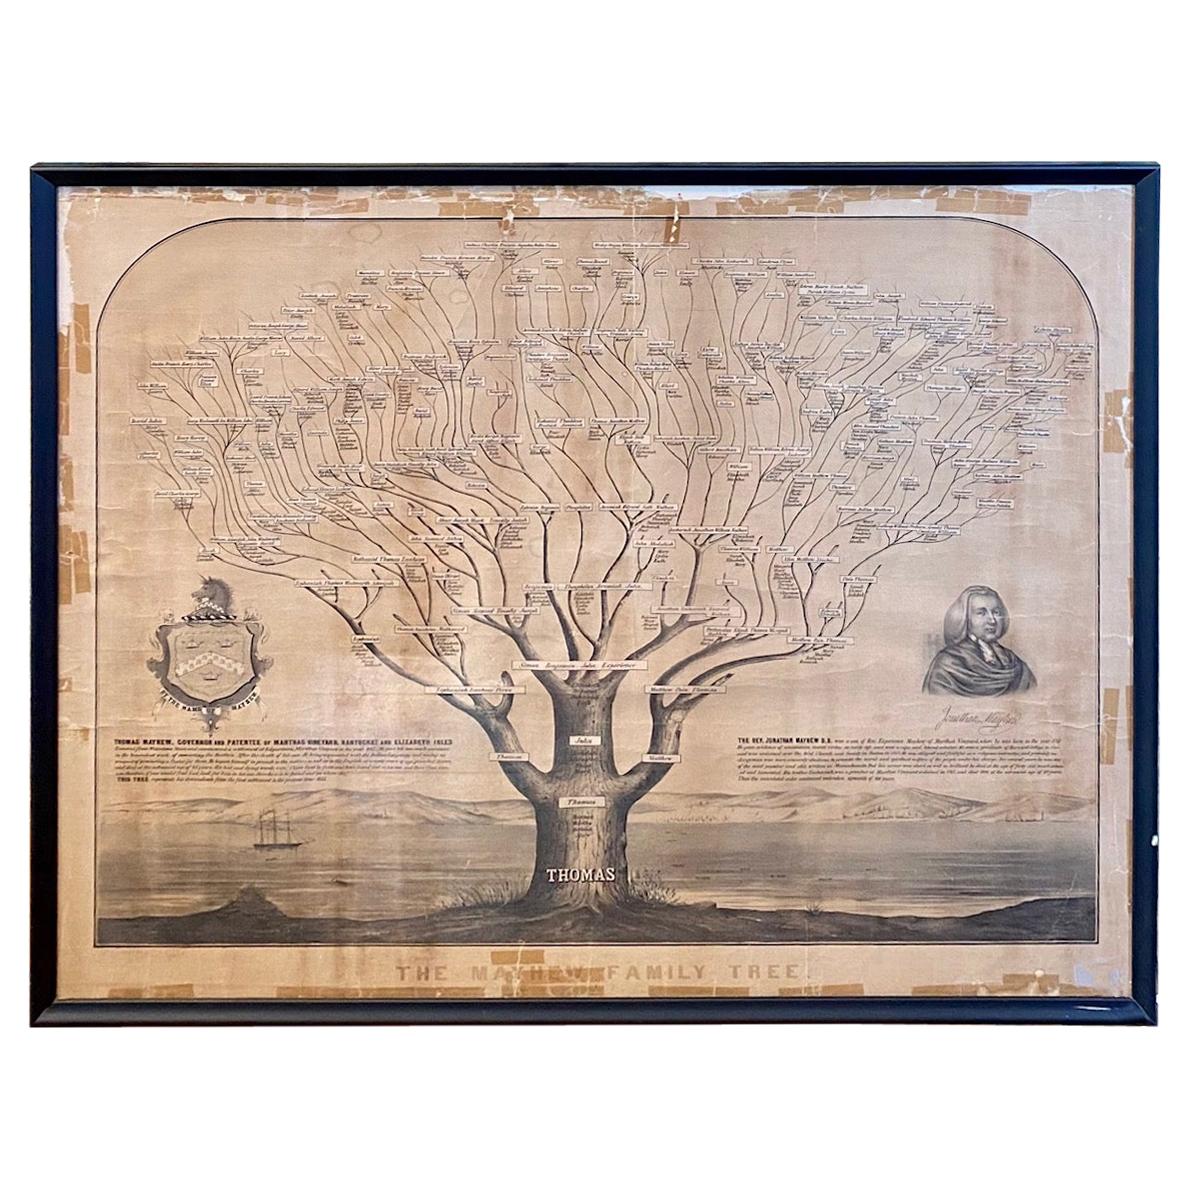 Mayhew-Familienbaum aus Nantucket und Martha's Vineyard aus dem 19. Jahrhundert von 1855